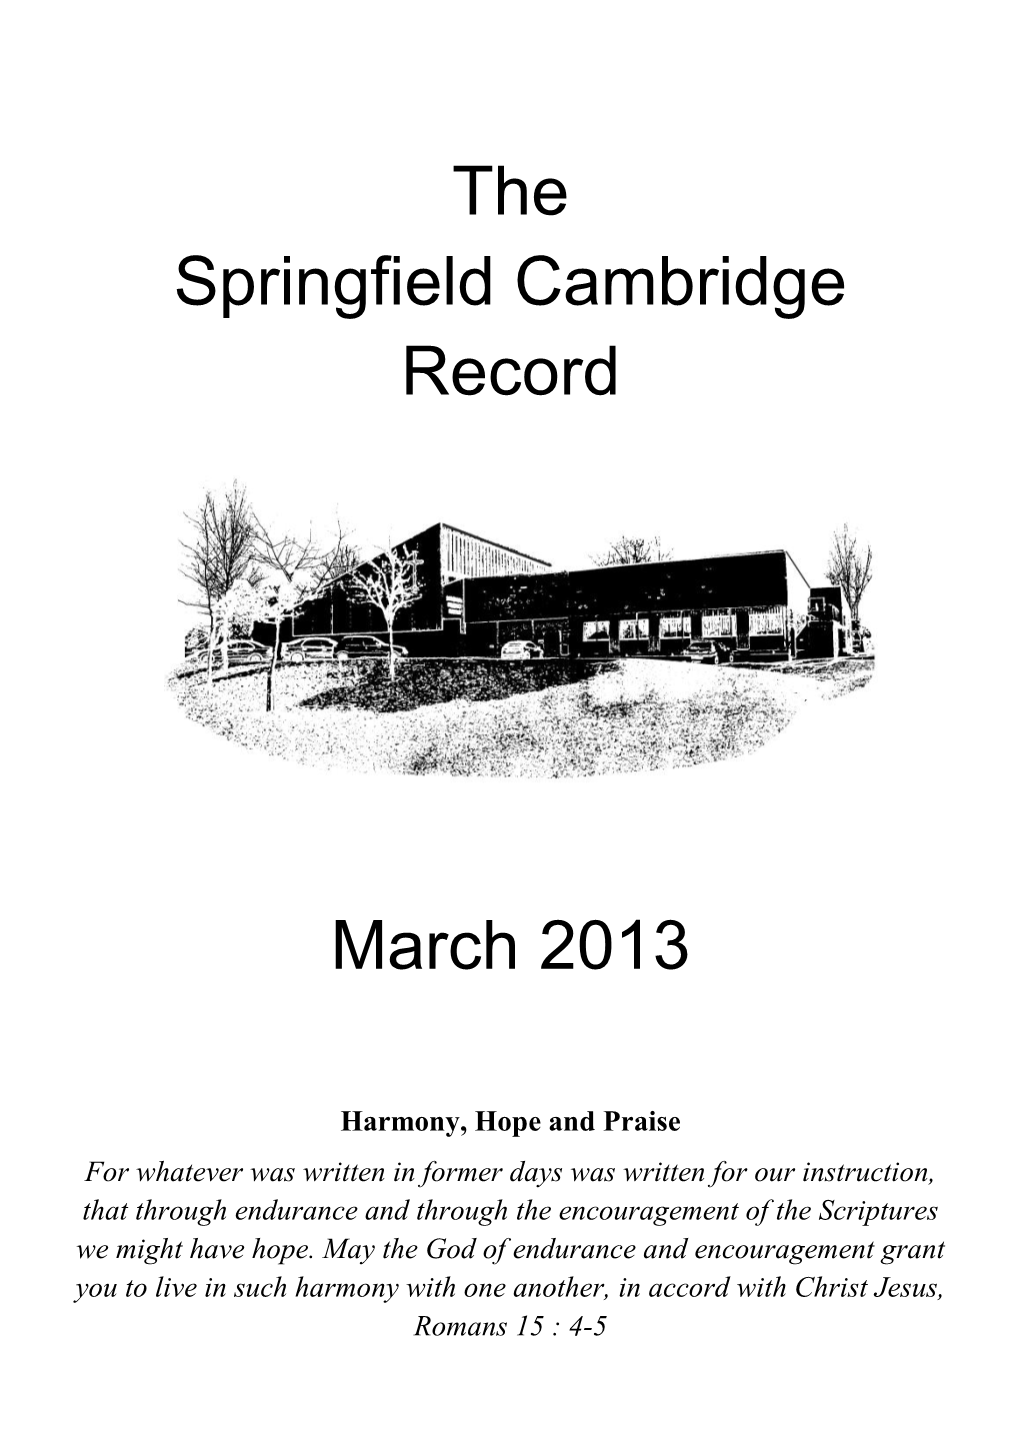 The Springfield Cambridge Record March 2013